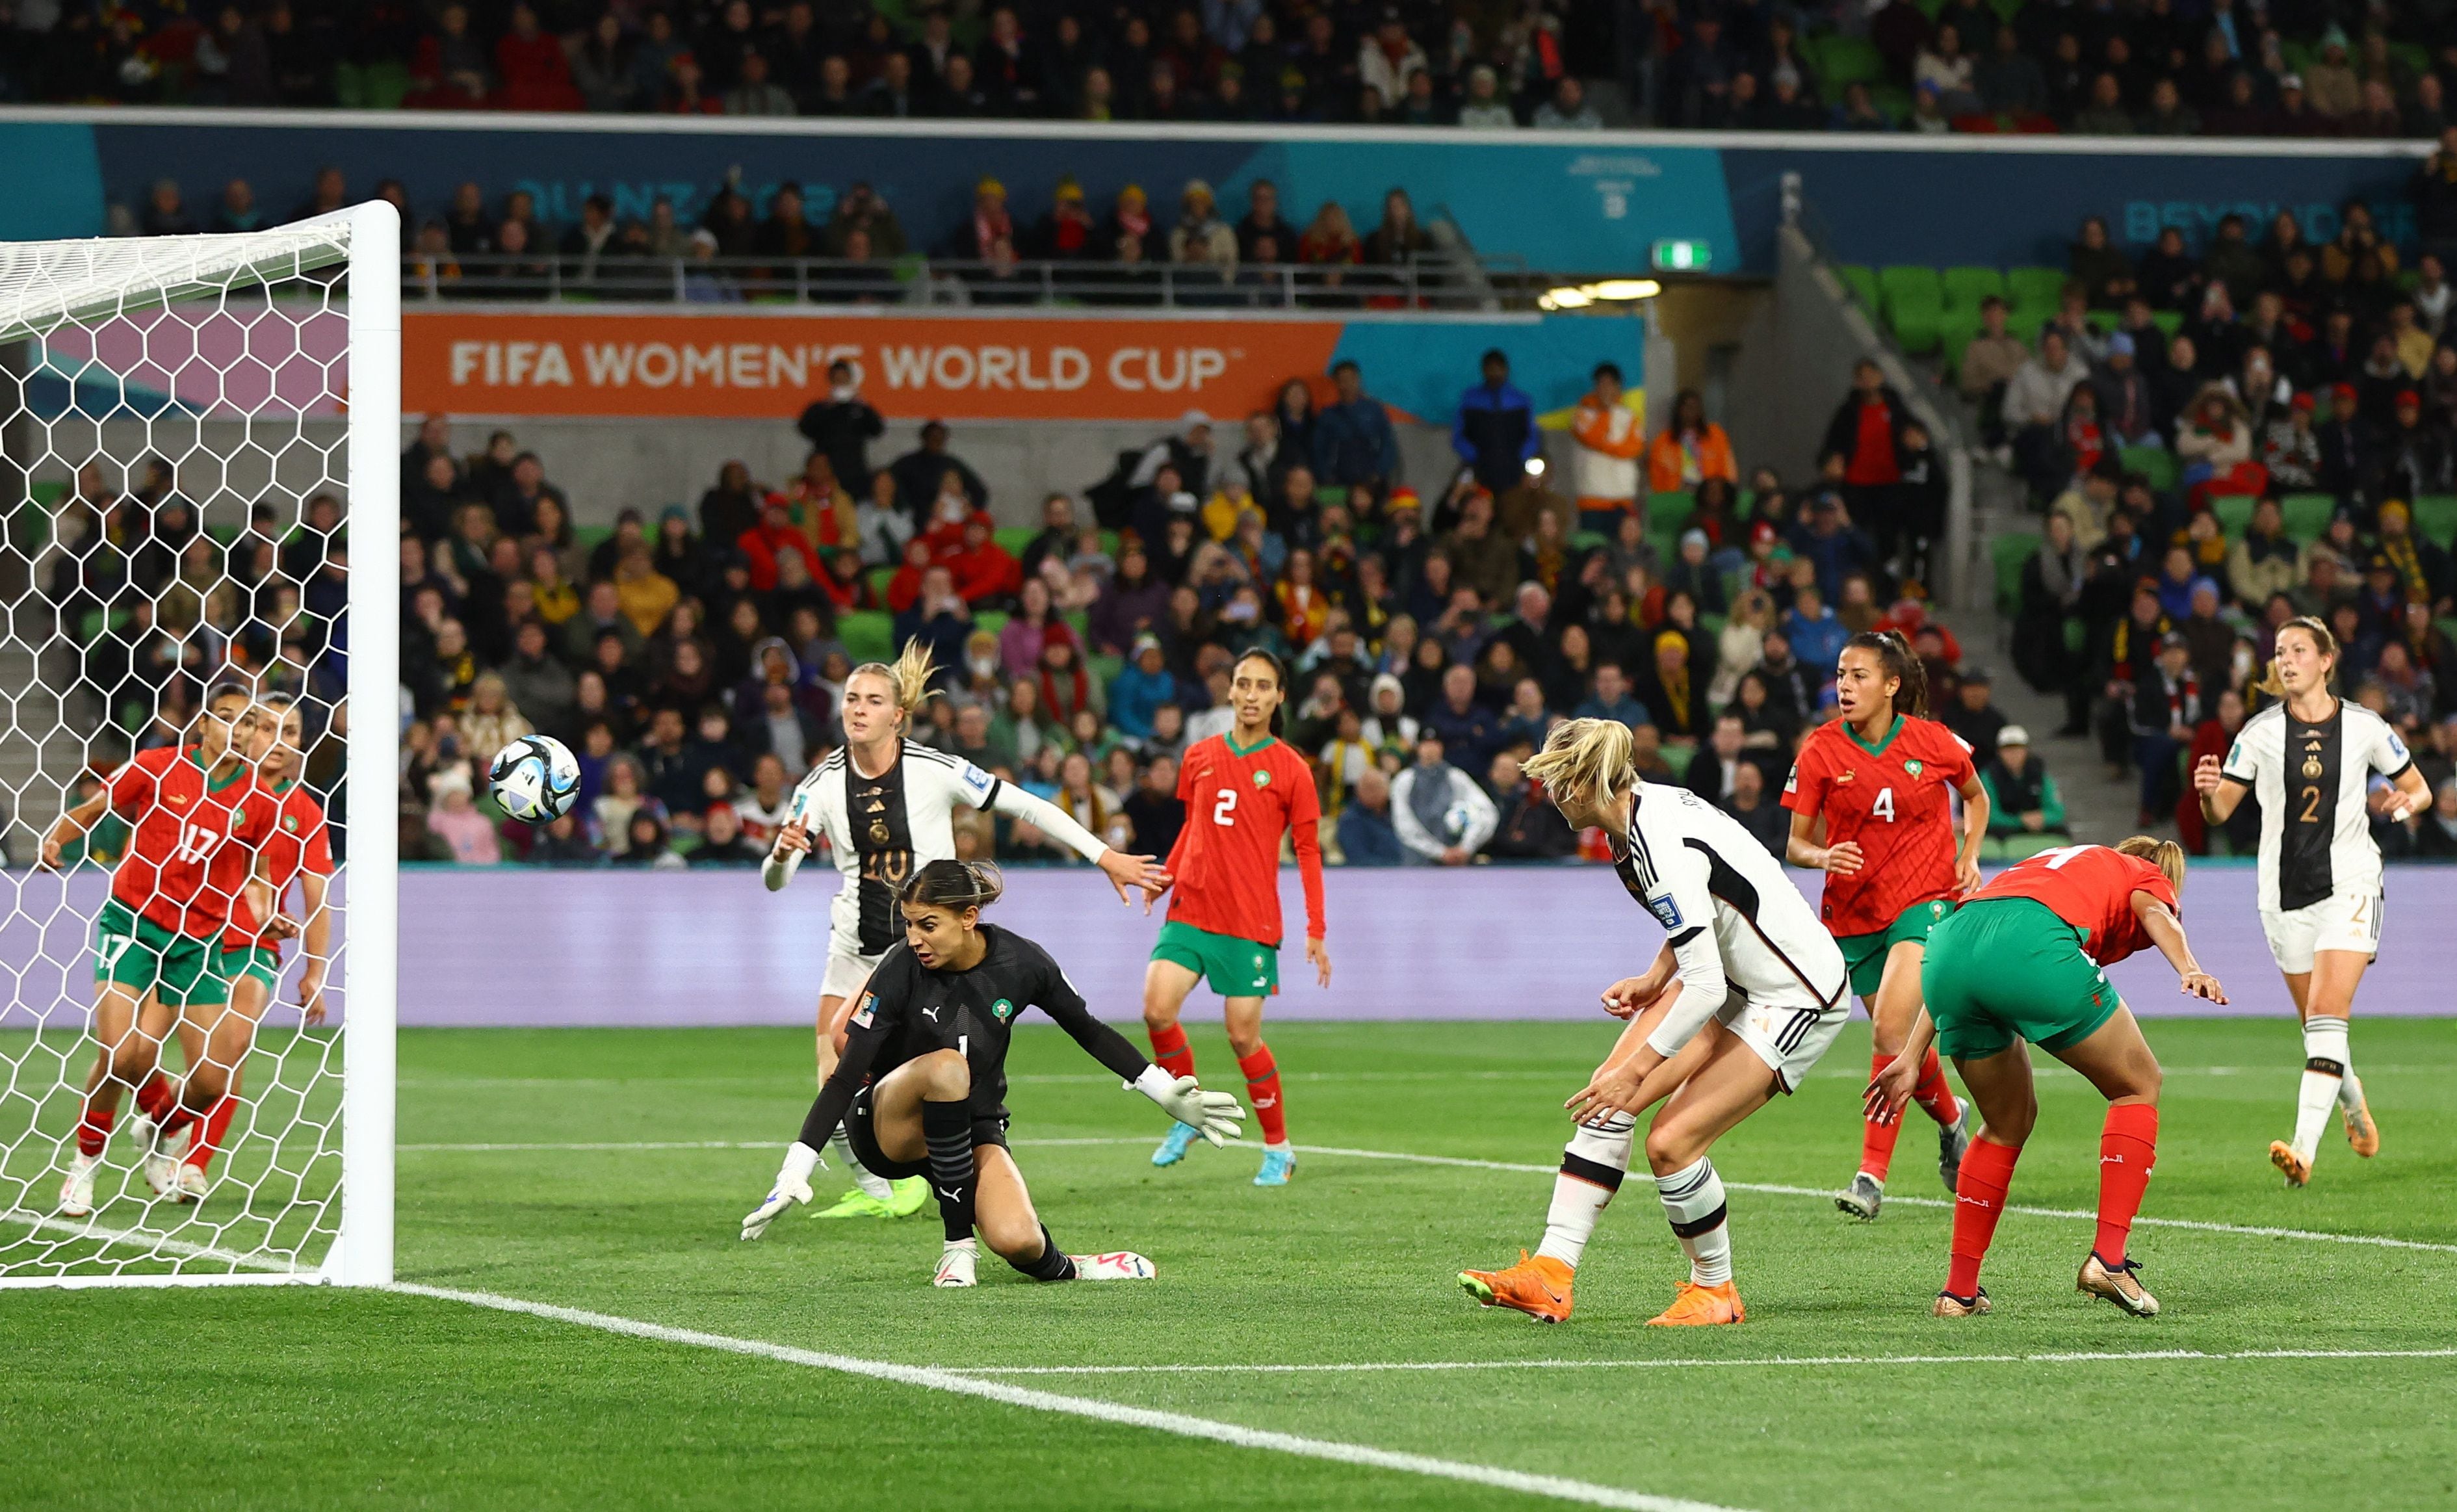 Alemania goleó a Marruecos por 6-0 en el inicio del Mundial Femenino en Australia-Nueva Zelanda. REUTERS/Hannah Mckay